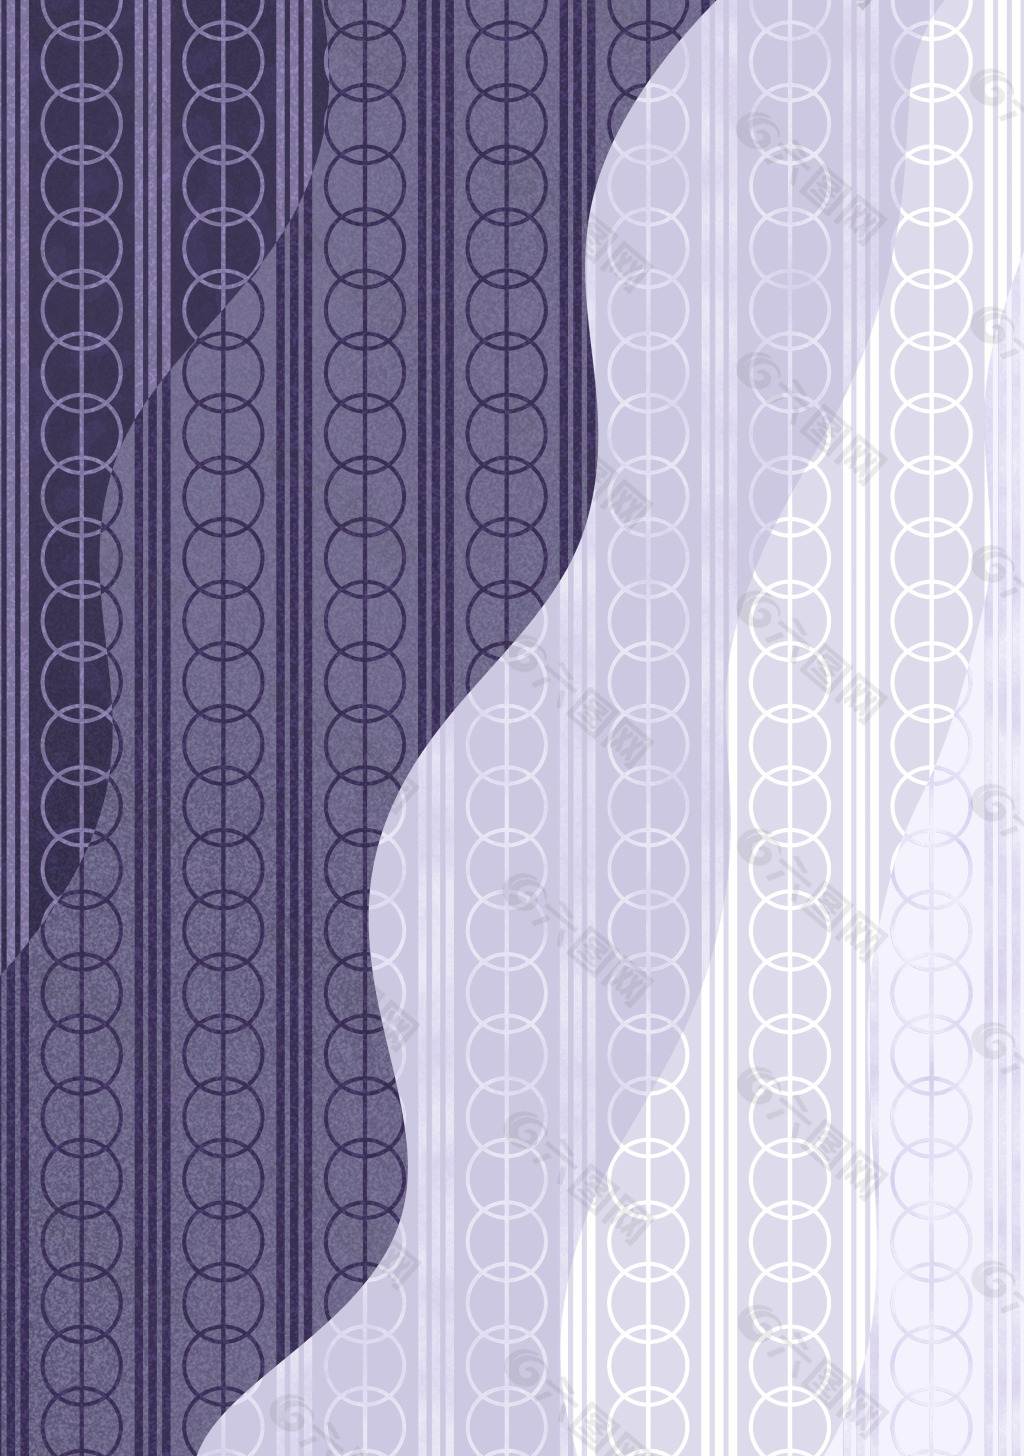 紫色小圈成排排列底纹花纹素材